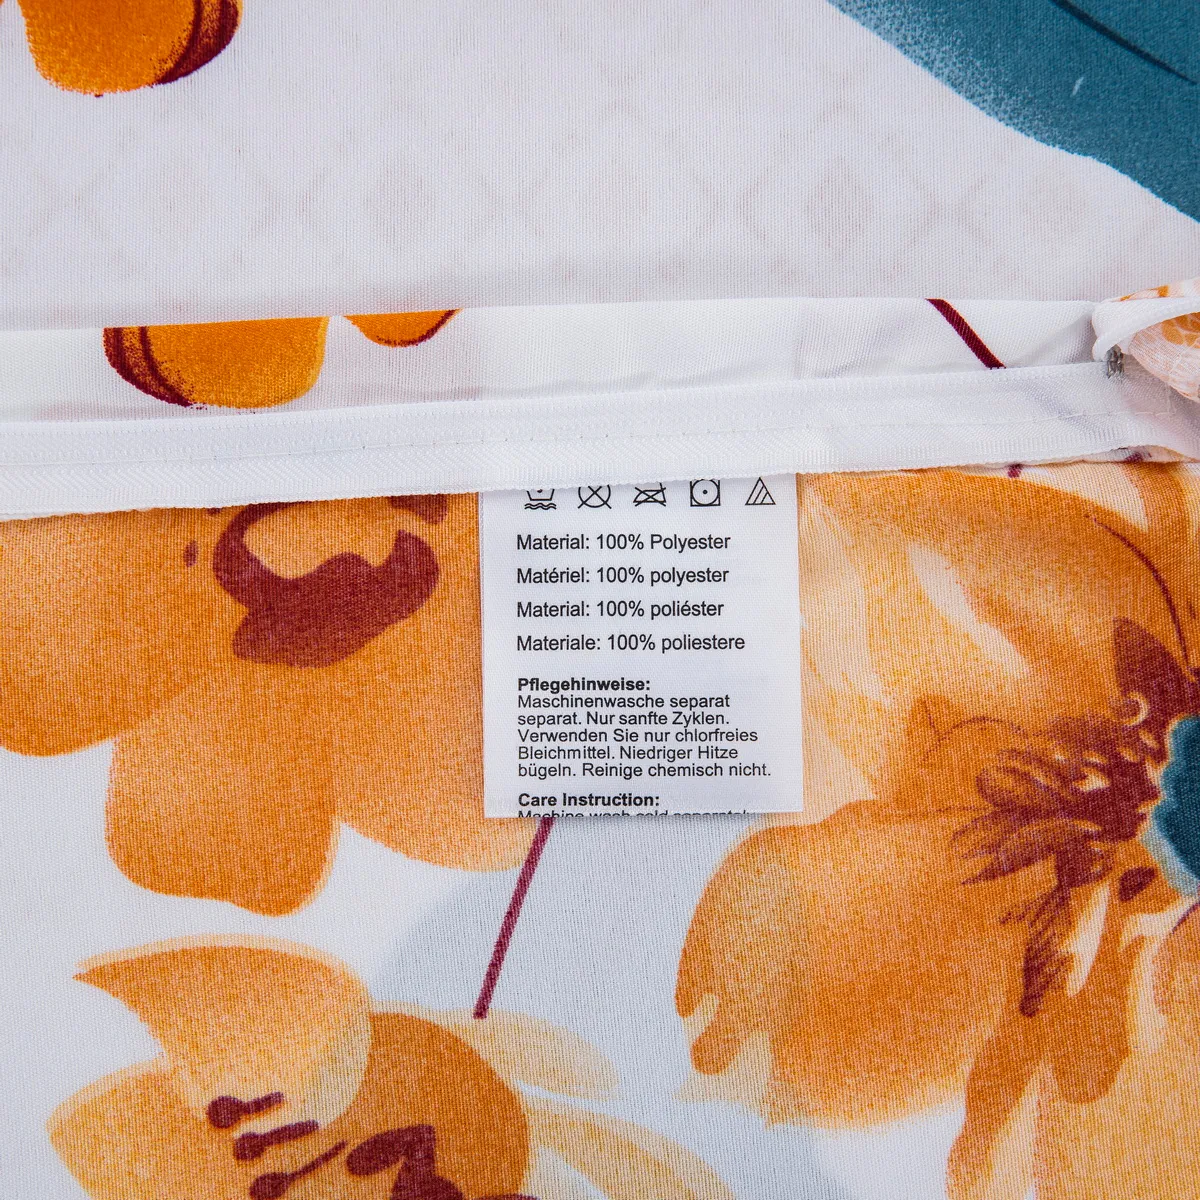 2/3 piezas de ropa de cama de diseño de margarita jacquard suave y cómoda, incluye funda nórdica y fundas de almohada multicolor big image 1